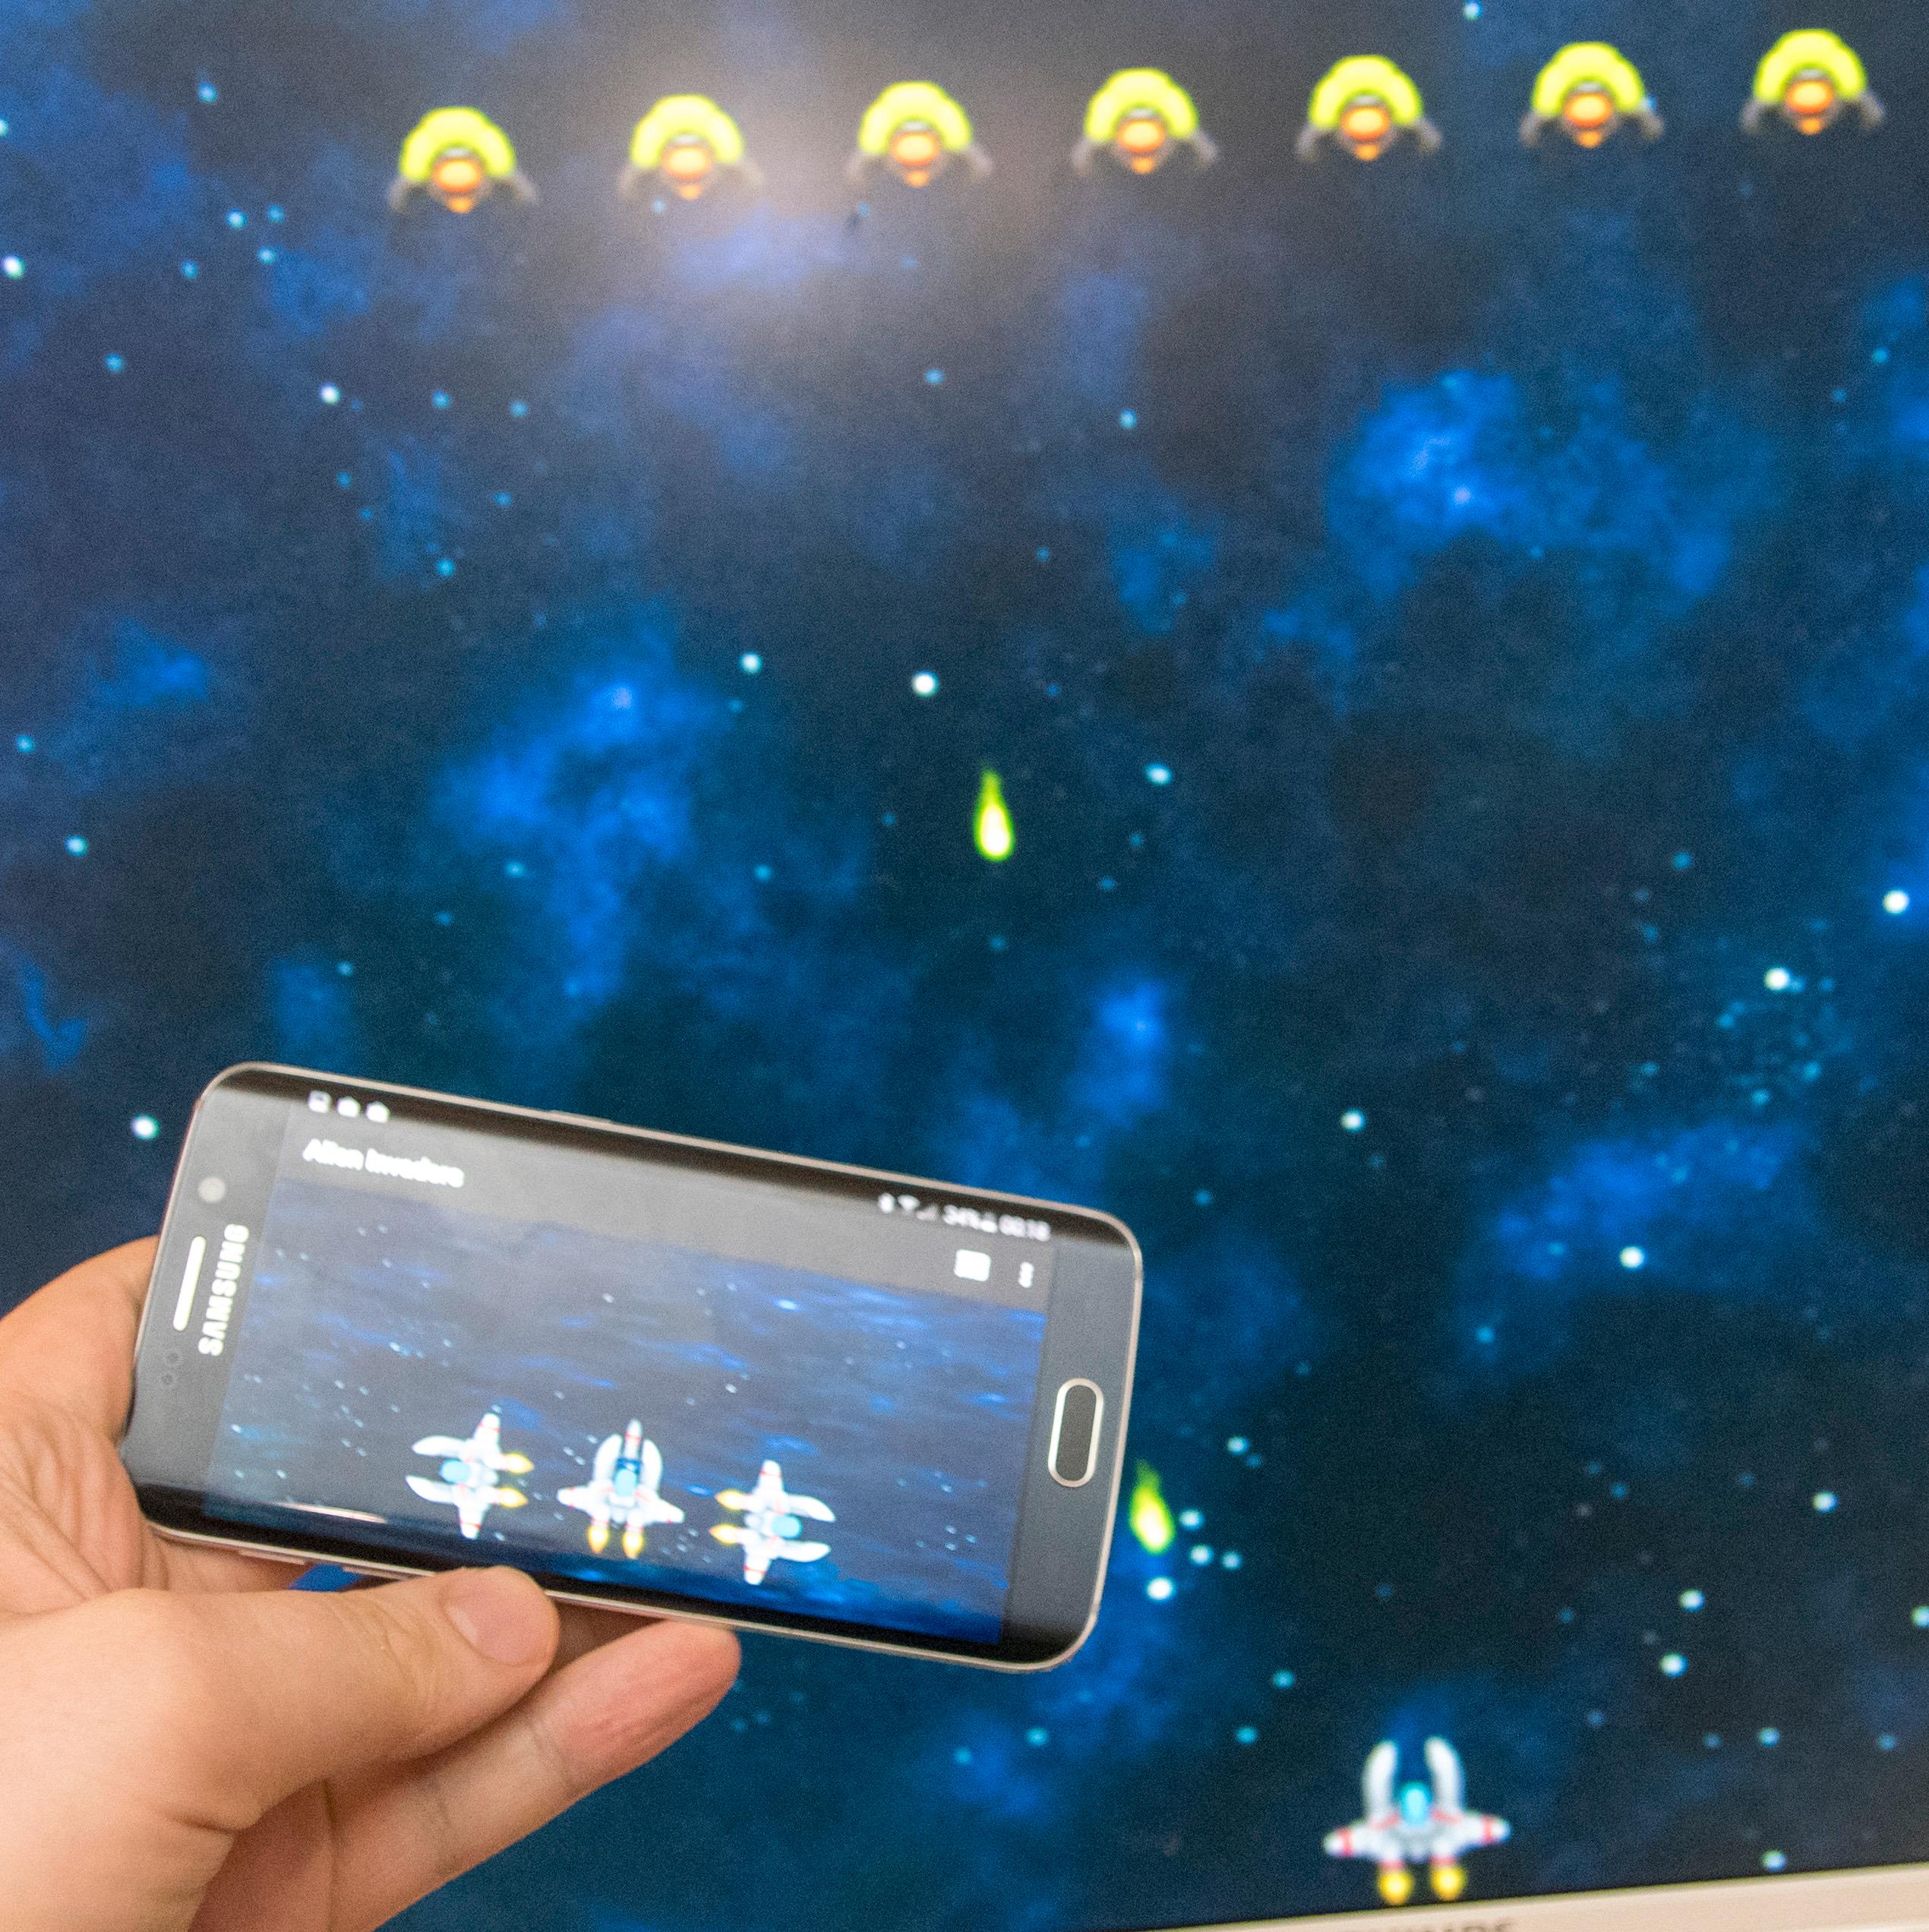 Slik ser det ut når vi spiller Alien Invaders. Telefonskjermen gir deg berøringskontroller, mens innholdet foregår på storskjermen. Foto: Finn Jarle Kvalheim, Tek.no